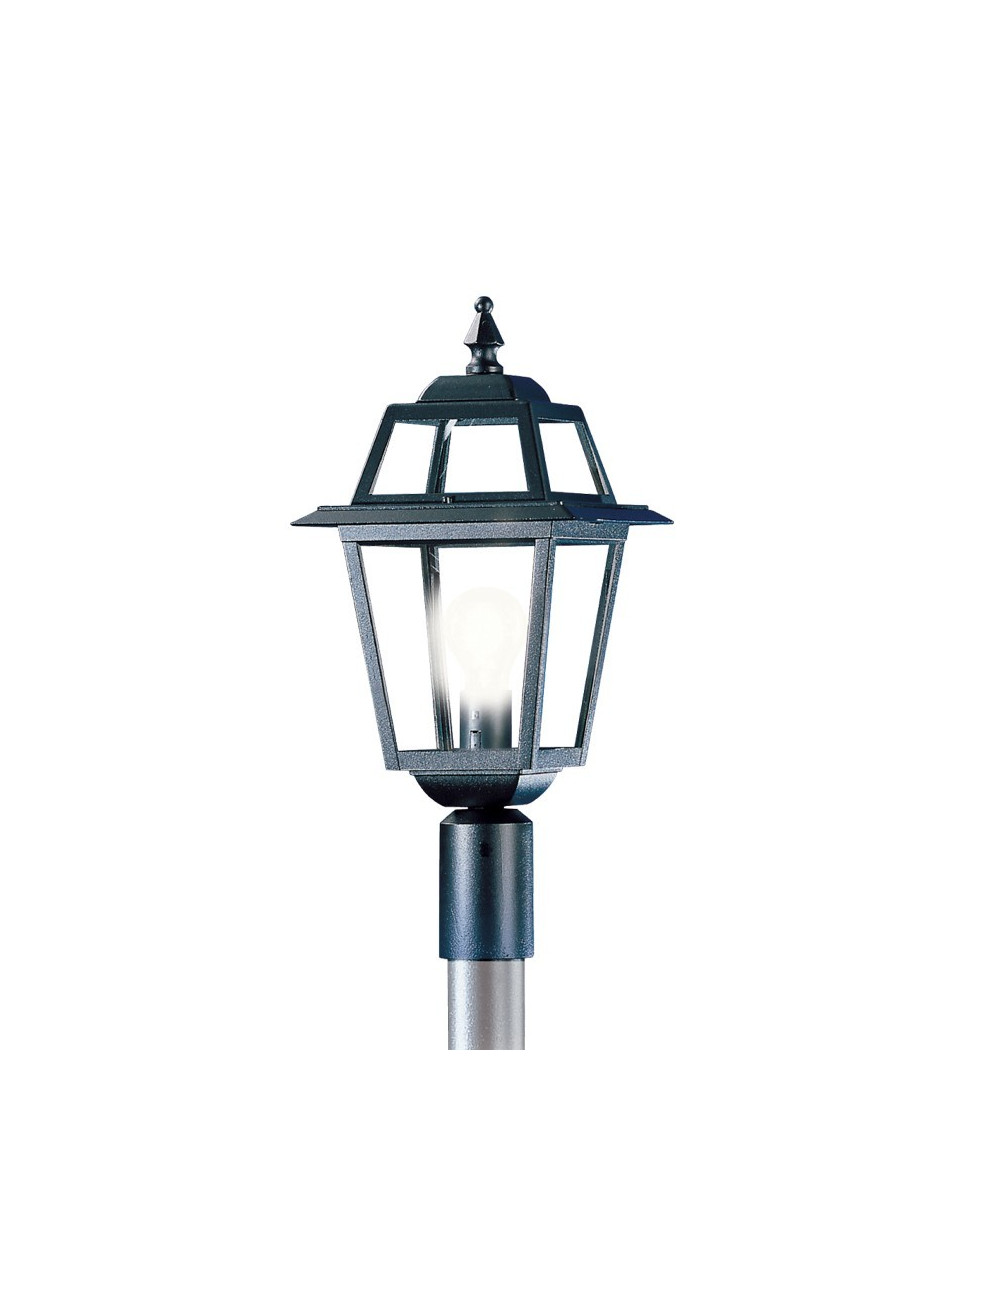 ARTEMIDE Lanterna con Attacco per Palo Esistente Illuminazione Esterno Giardino